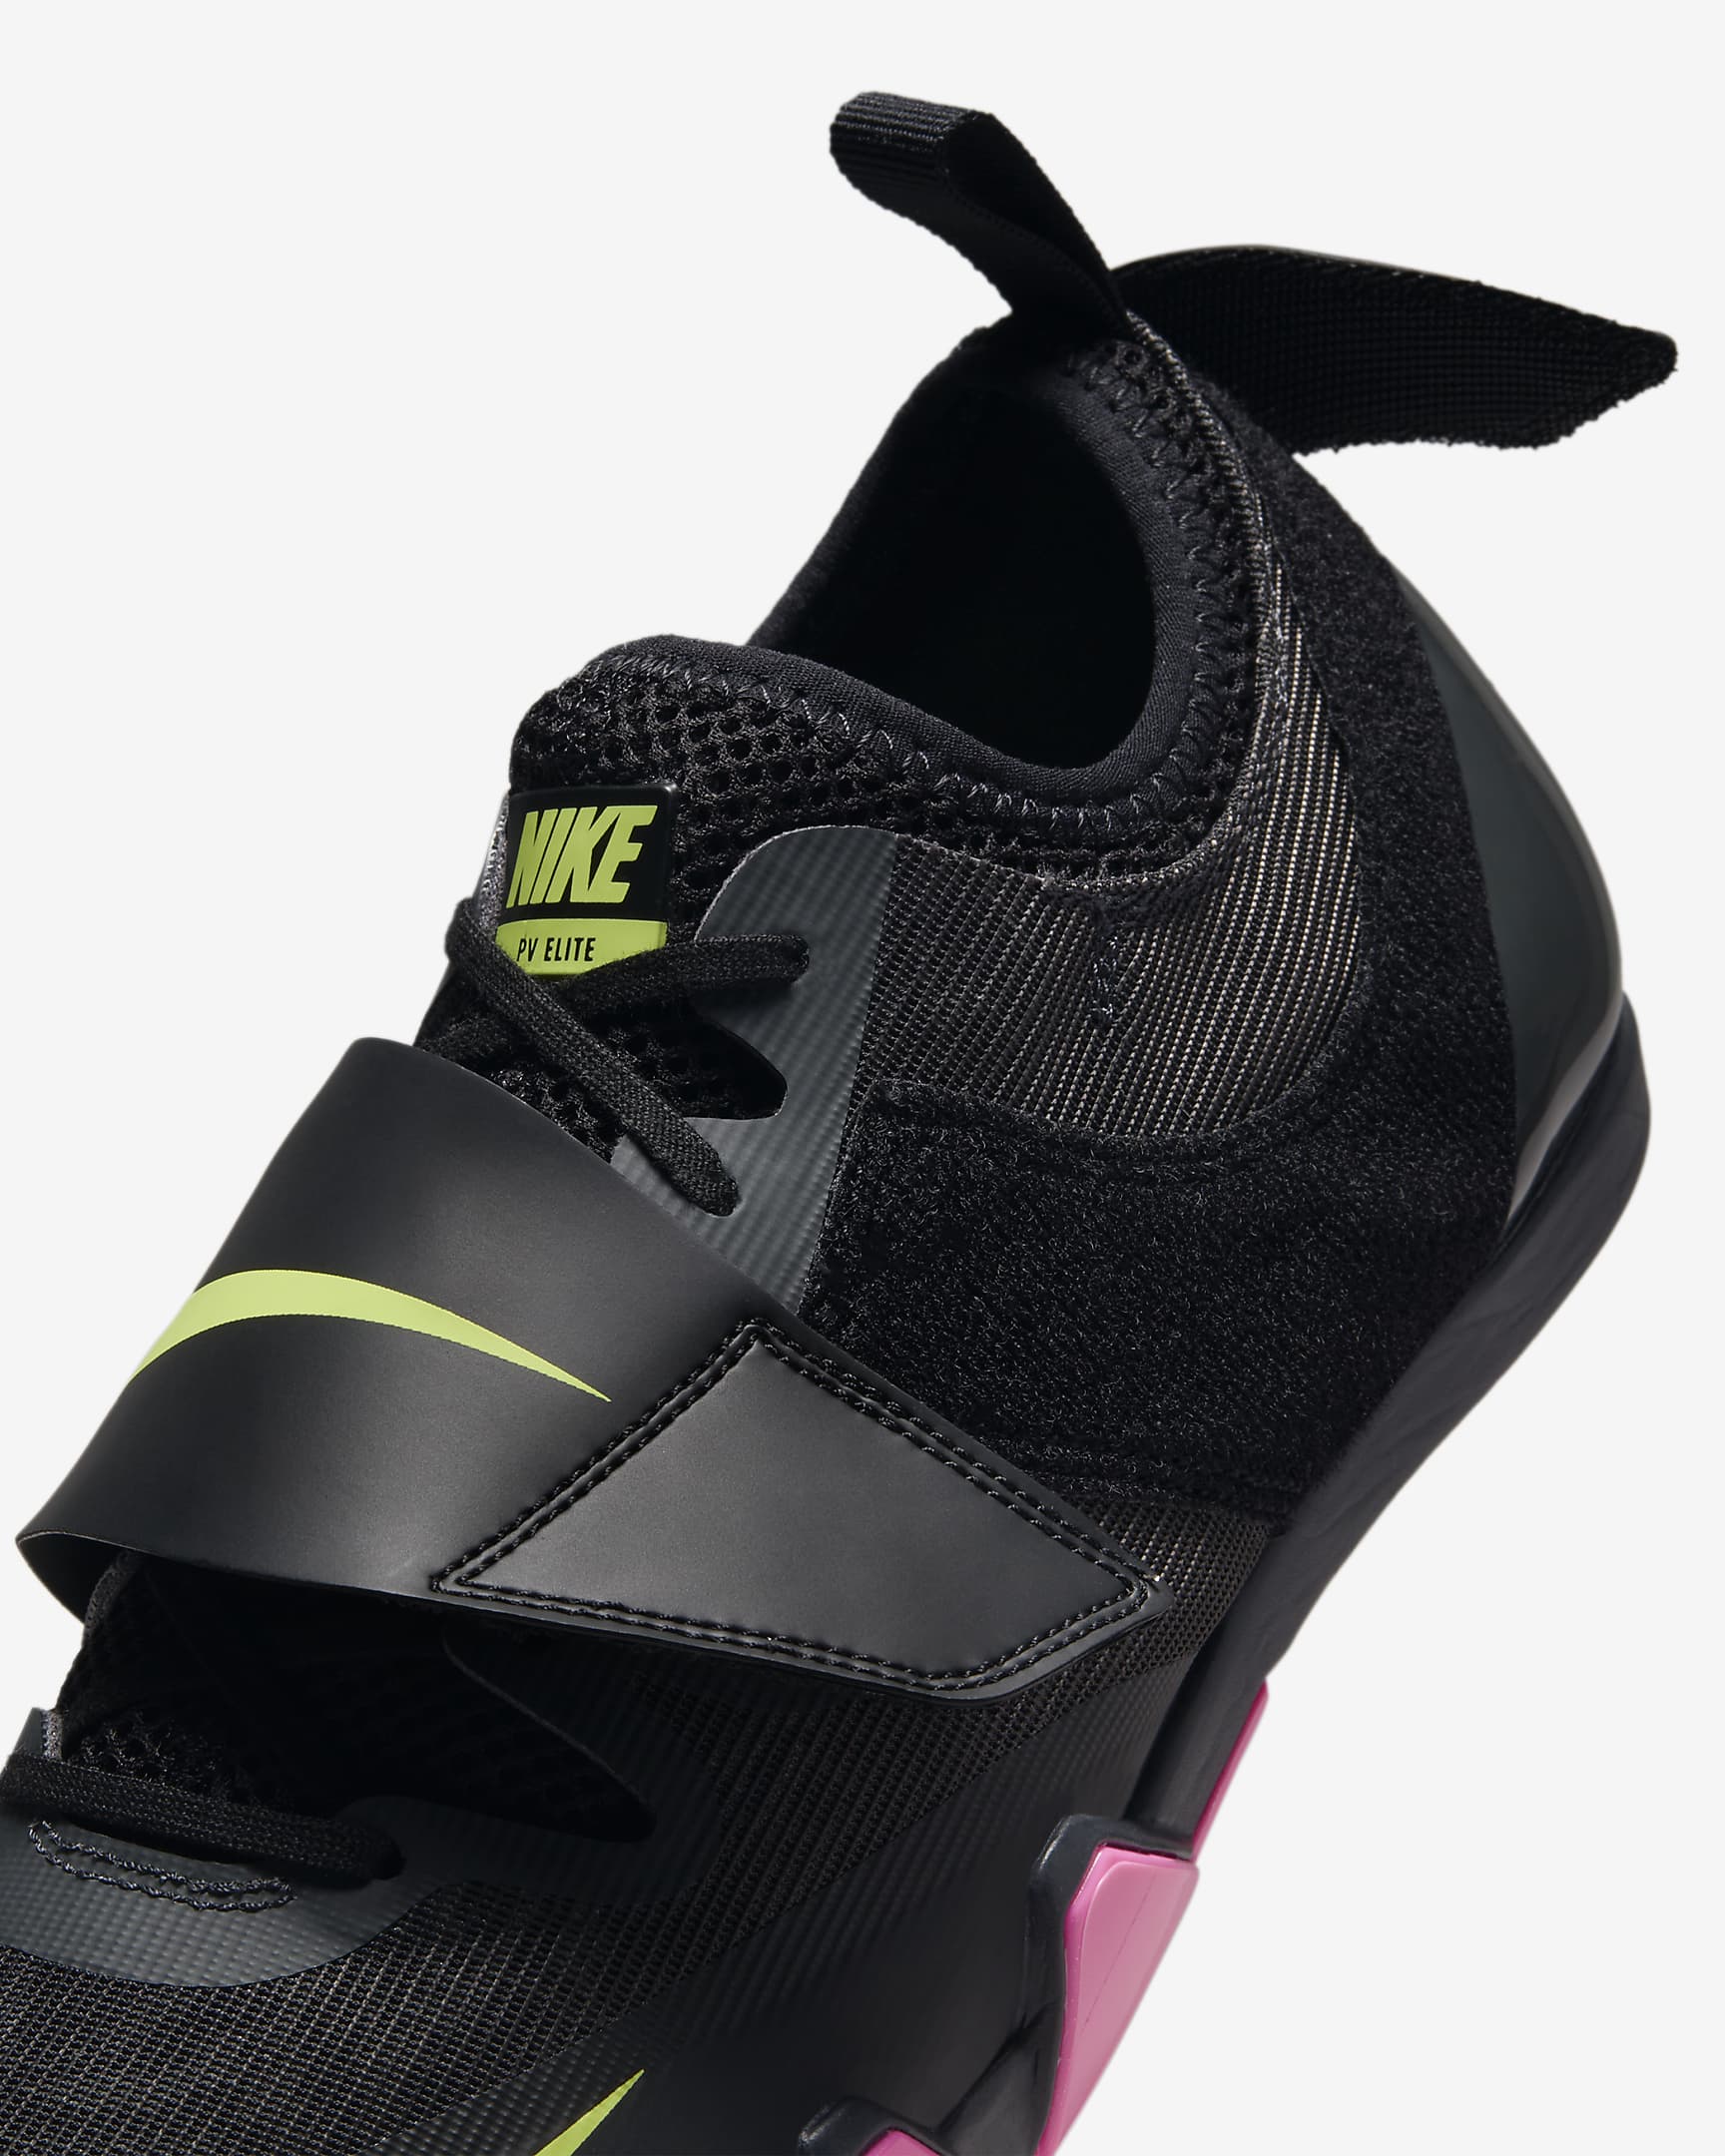 Tenis de clavos para salto y atletismo Nike Pole Vault Elite - Antracita/Negro/Toque de limón claro/Rosa feroz